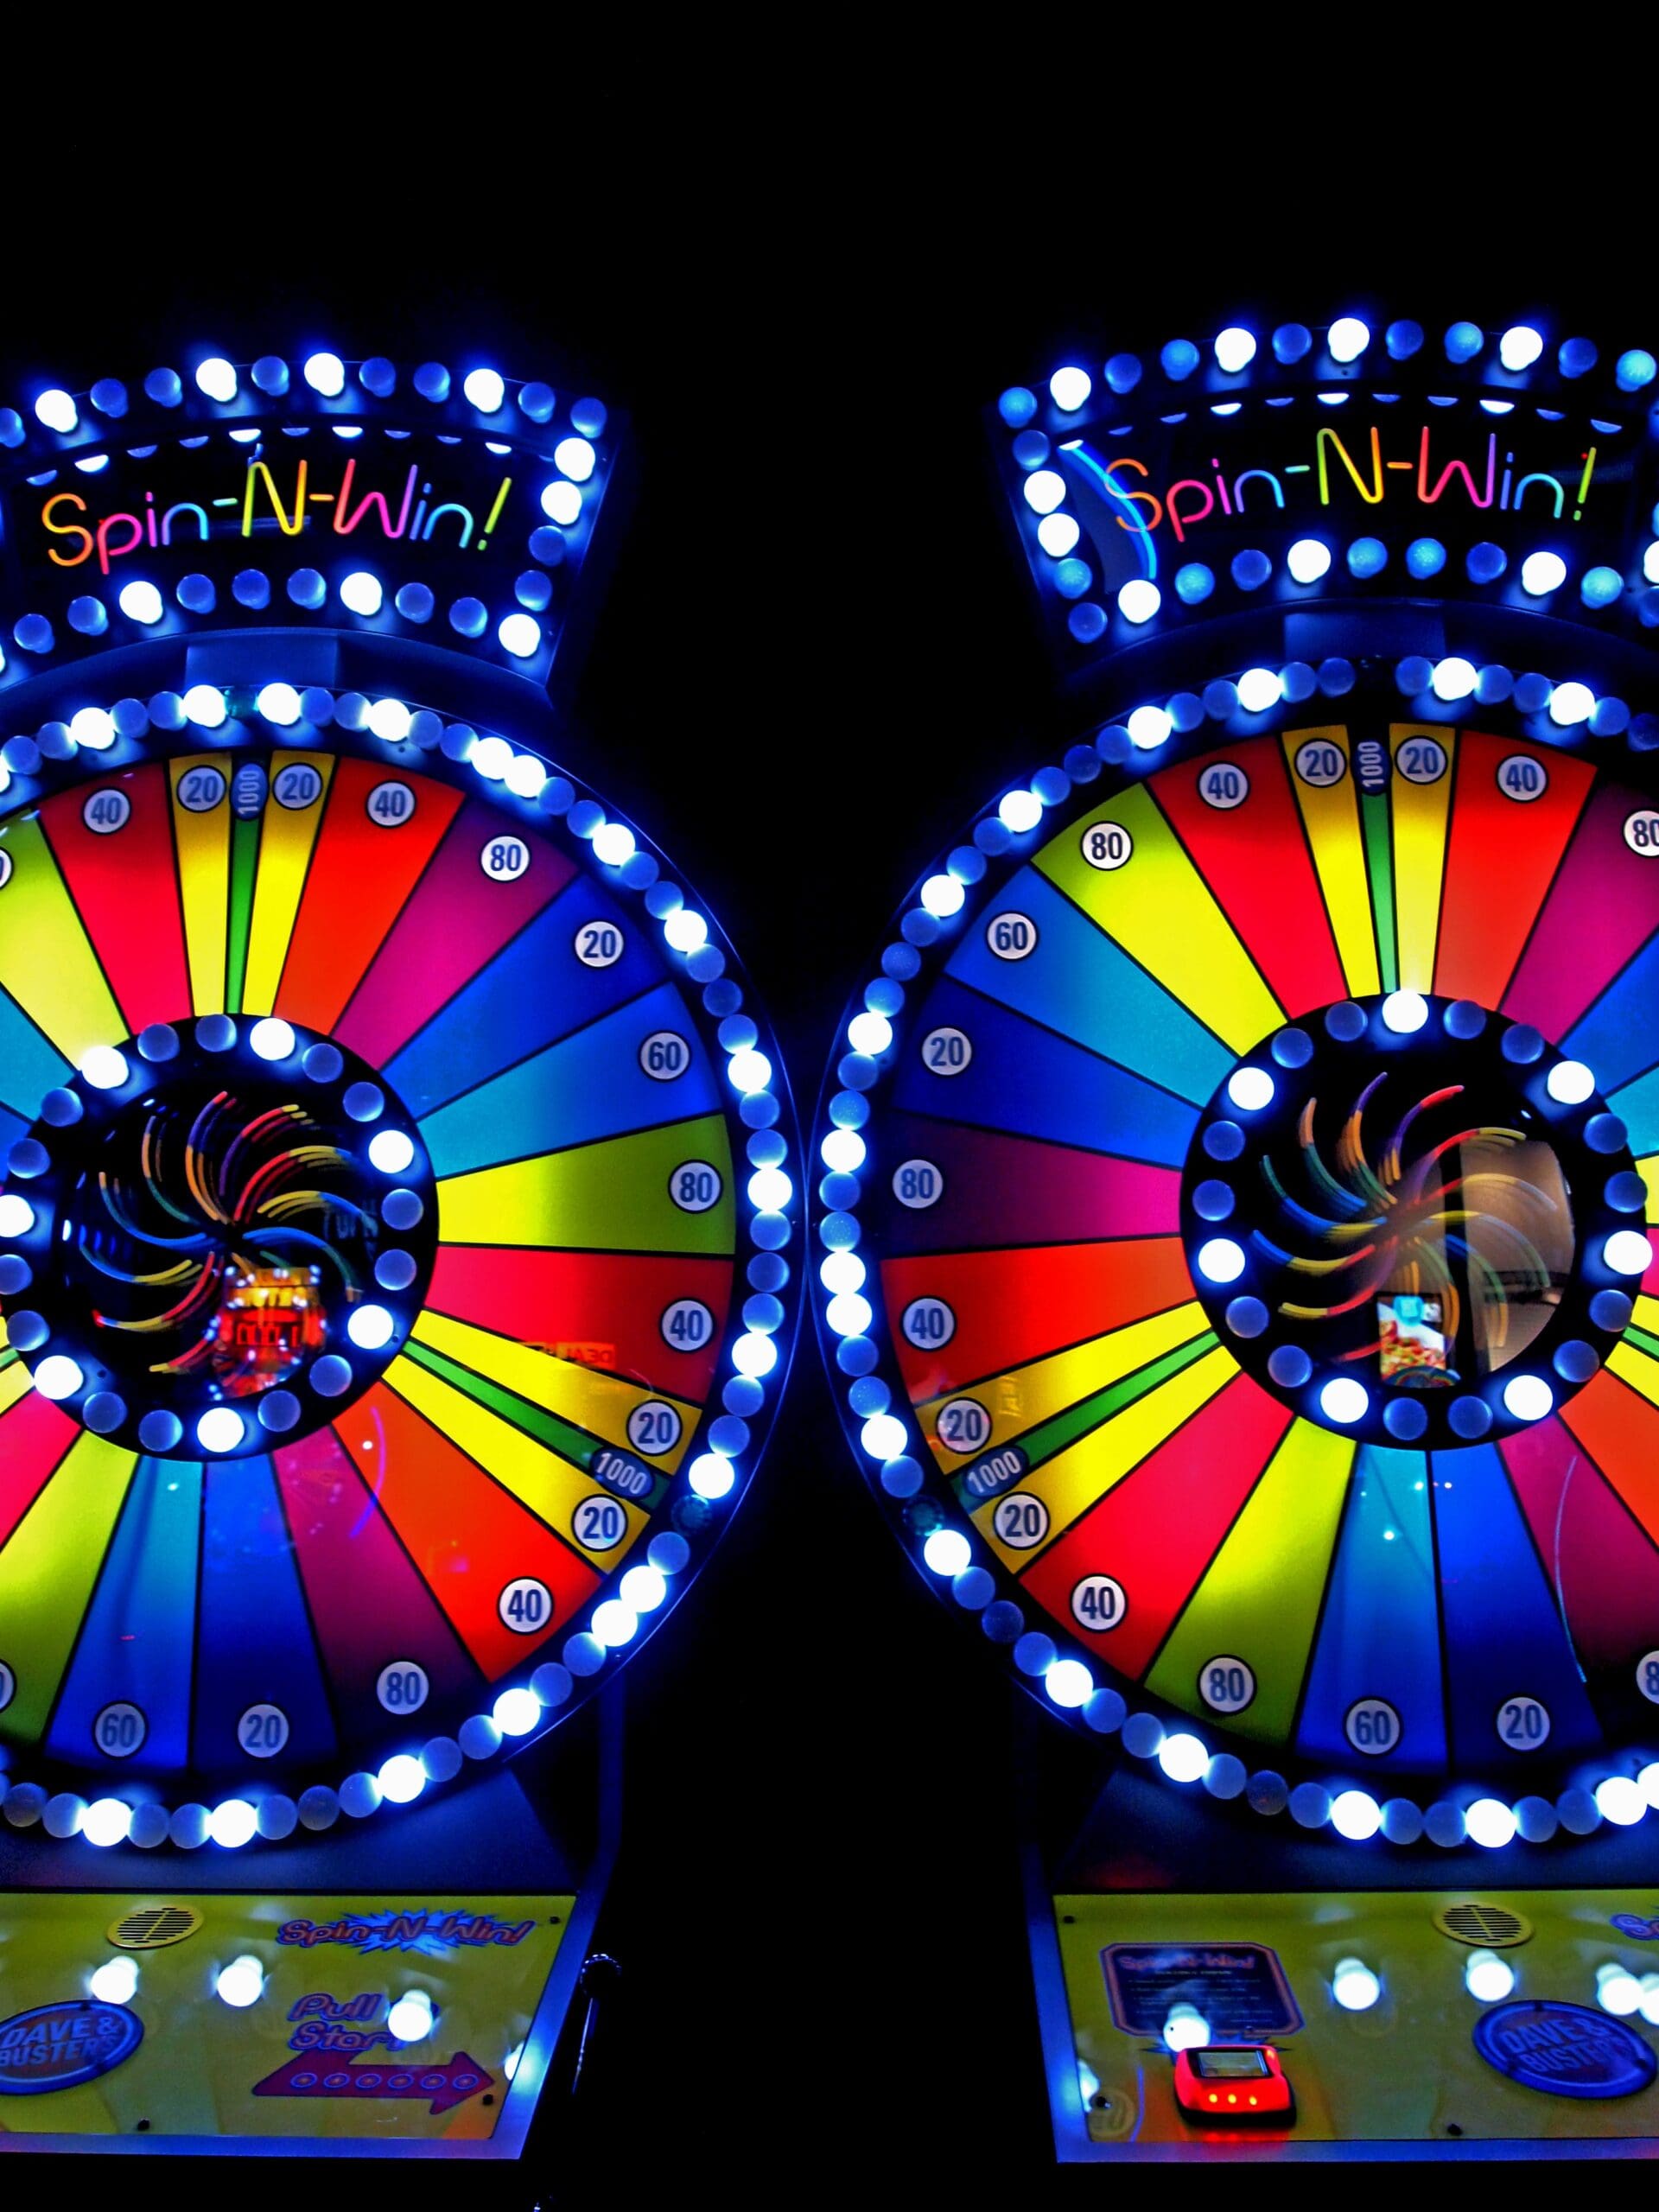 tips for slots machine casino